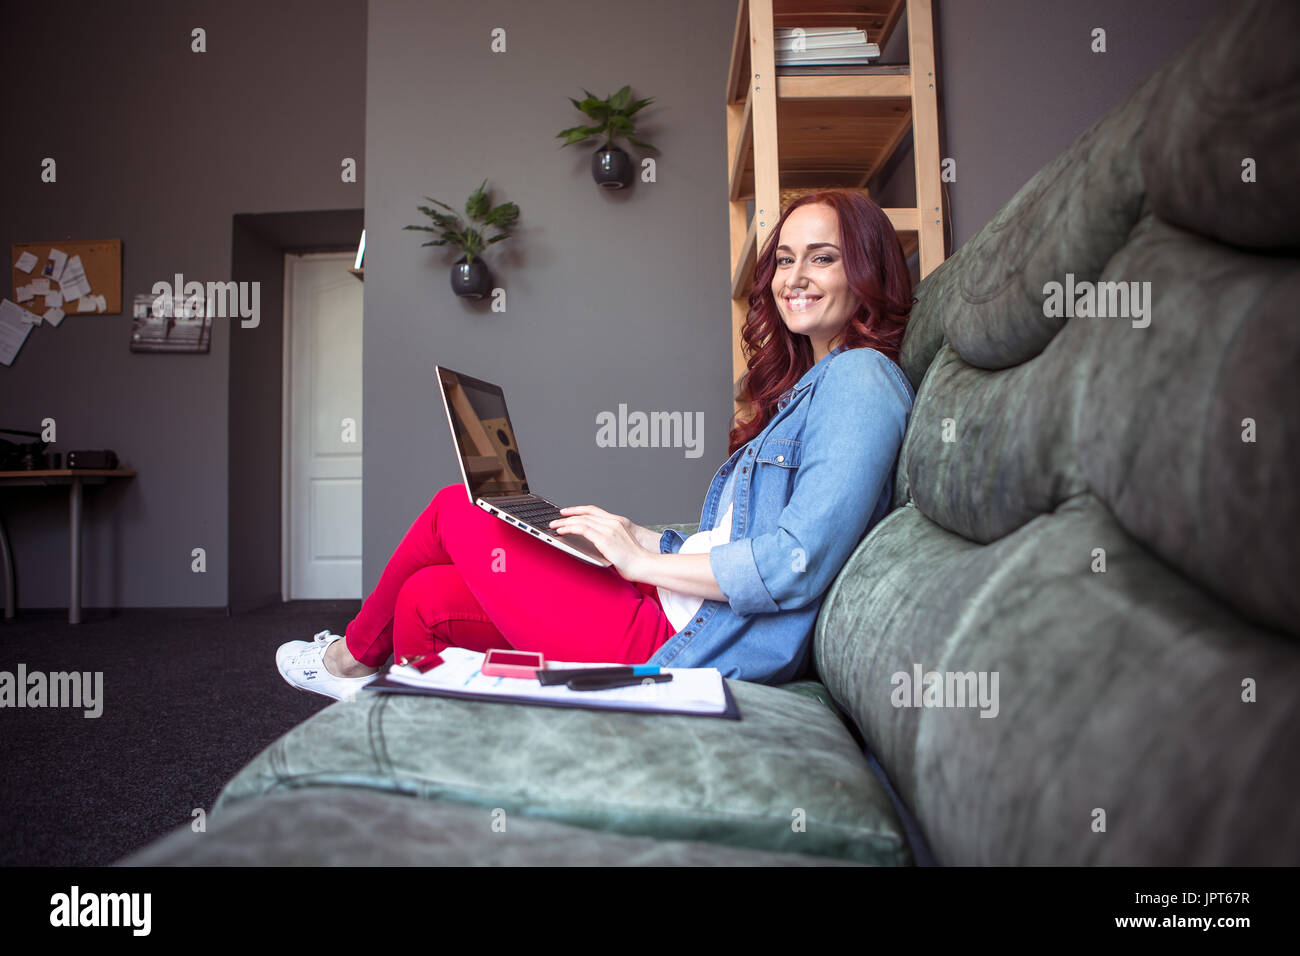 Lächelnde rote kurzhaarige Frau am Projekt von zu Hause aus arbeiten. Frelance Konzept, keine Notwendigkeit zu Büro gehen. Stockfoto